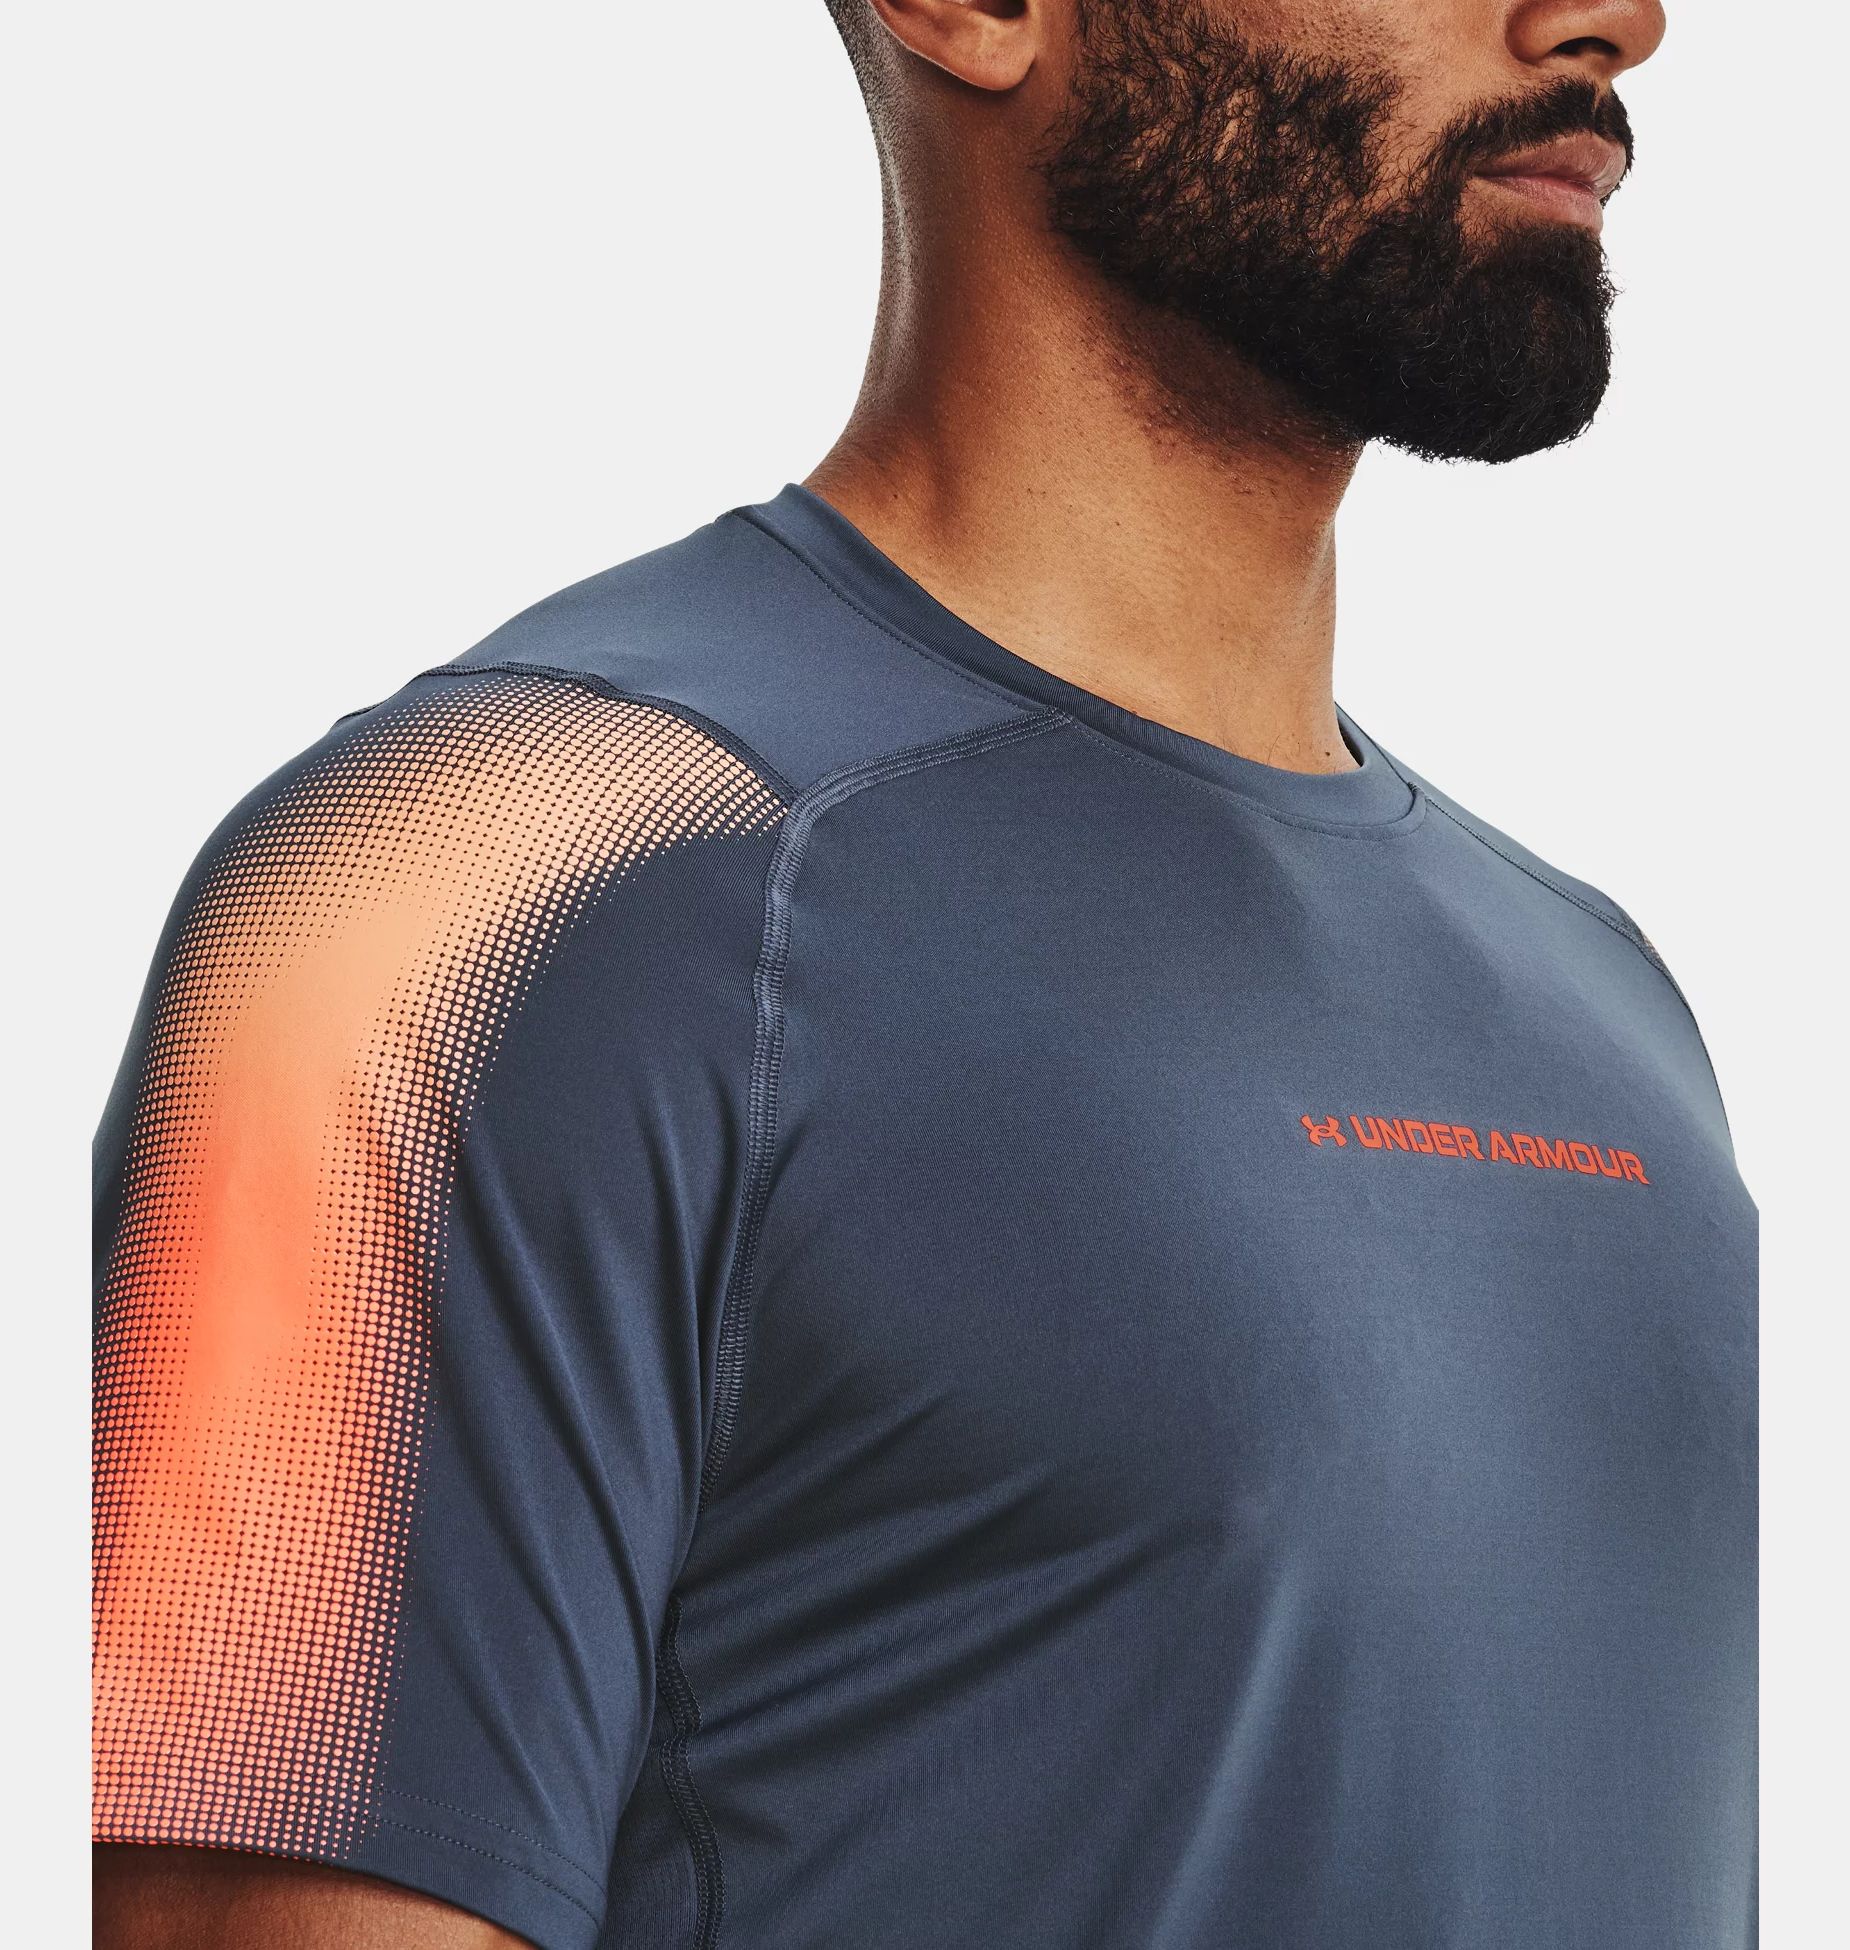 Under Armour Men's HeatGear Fitted Short-Sleeve T-Shirt